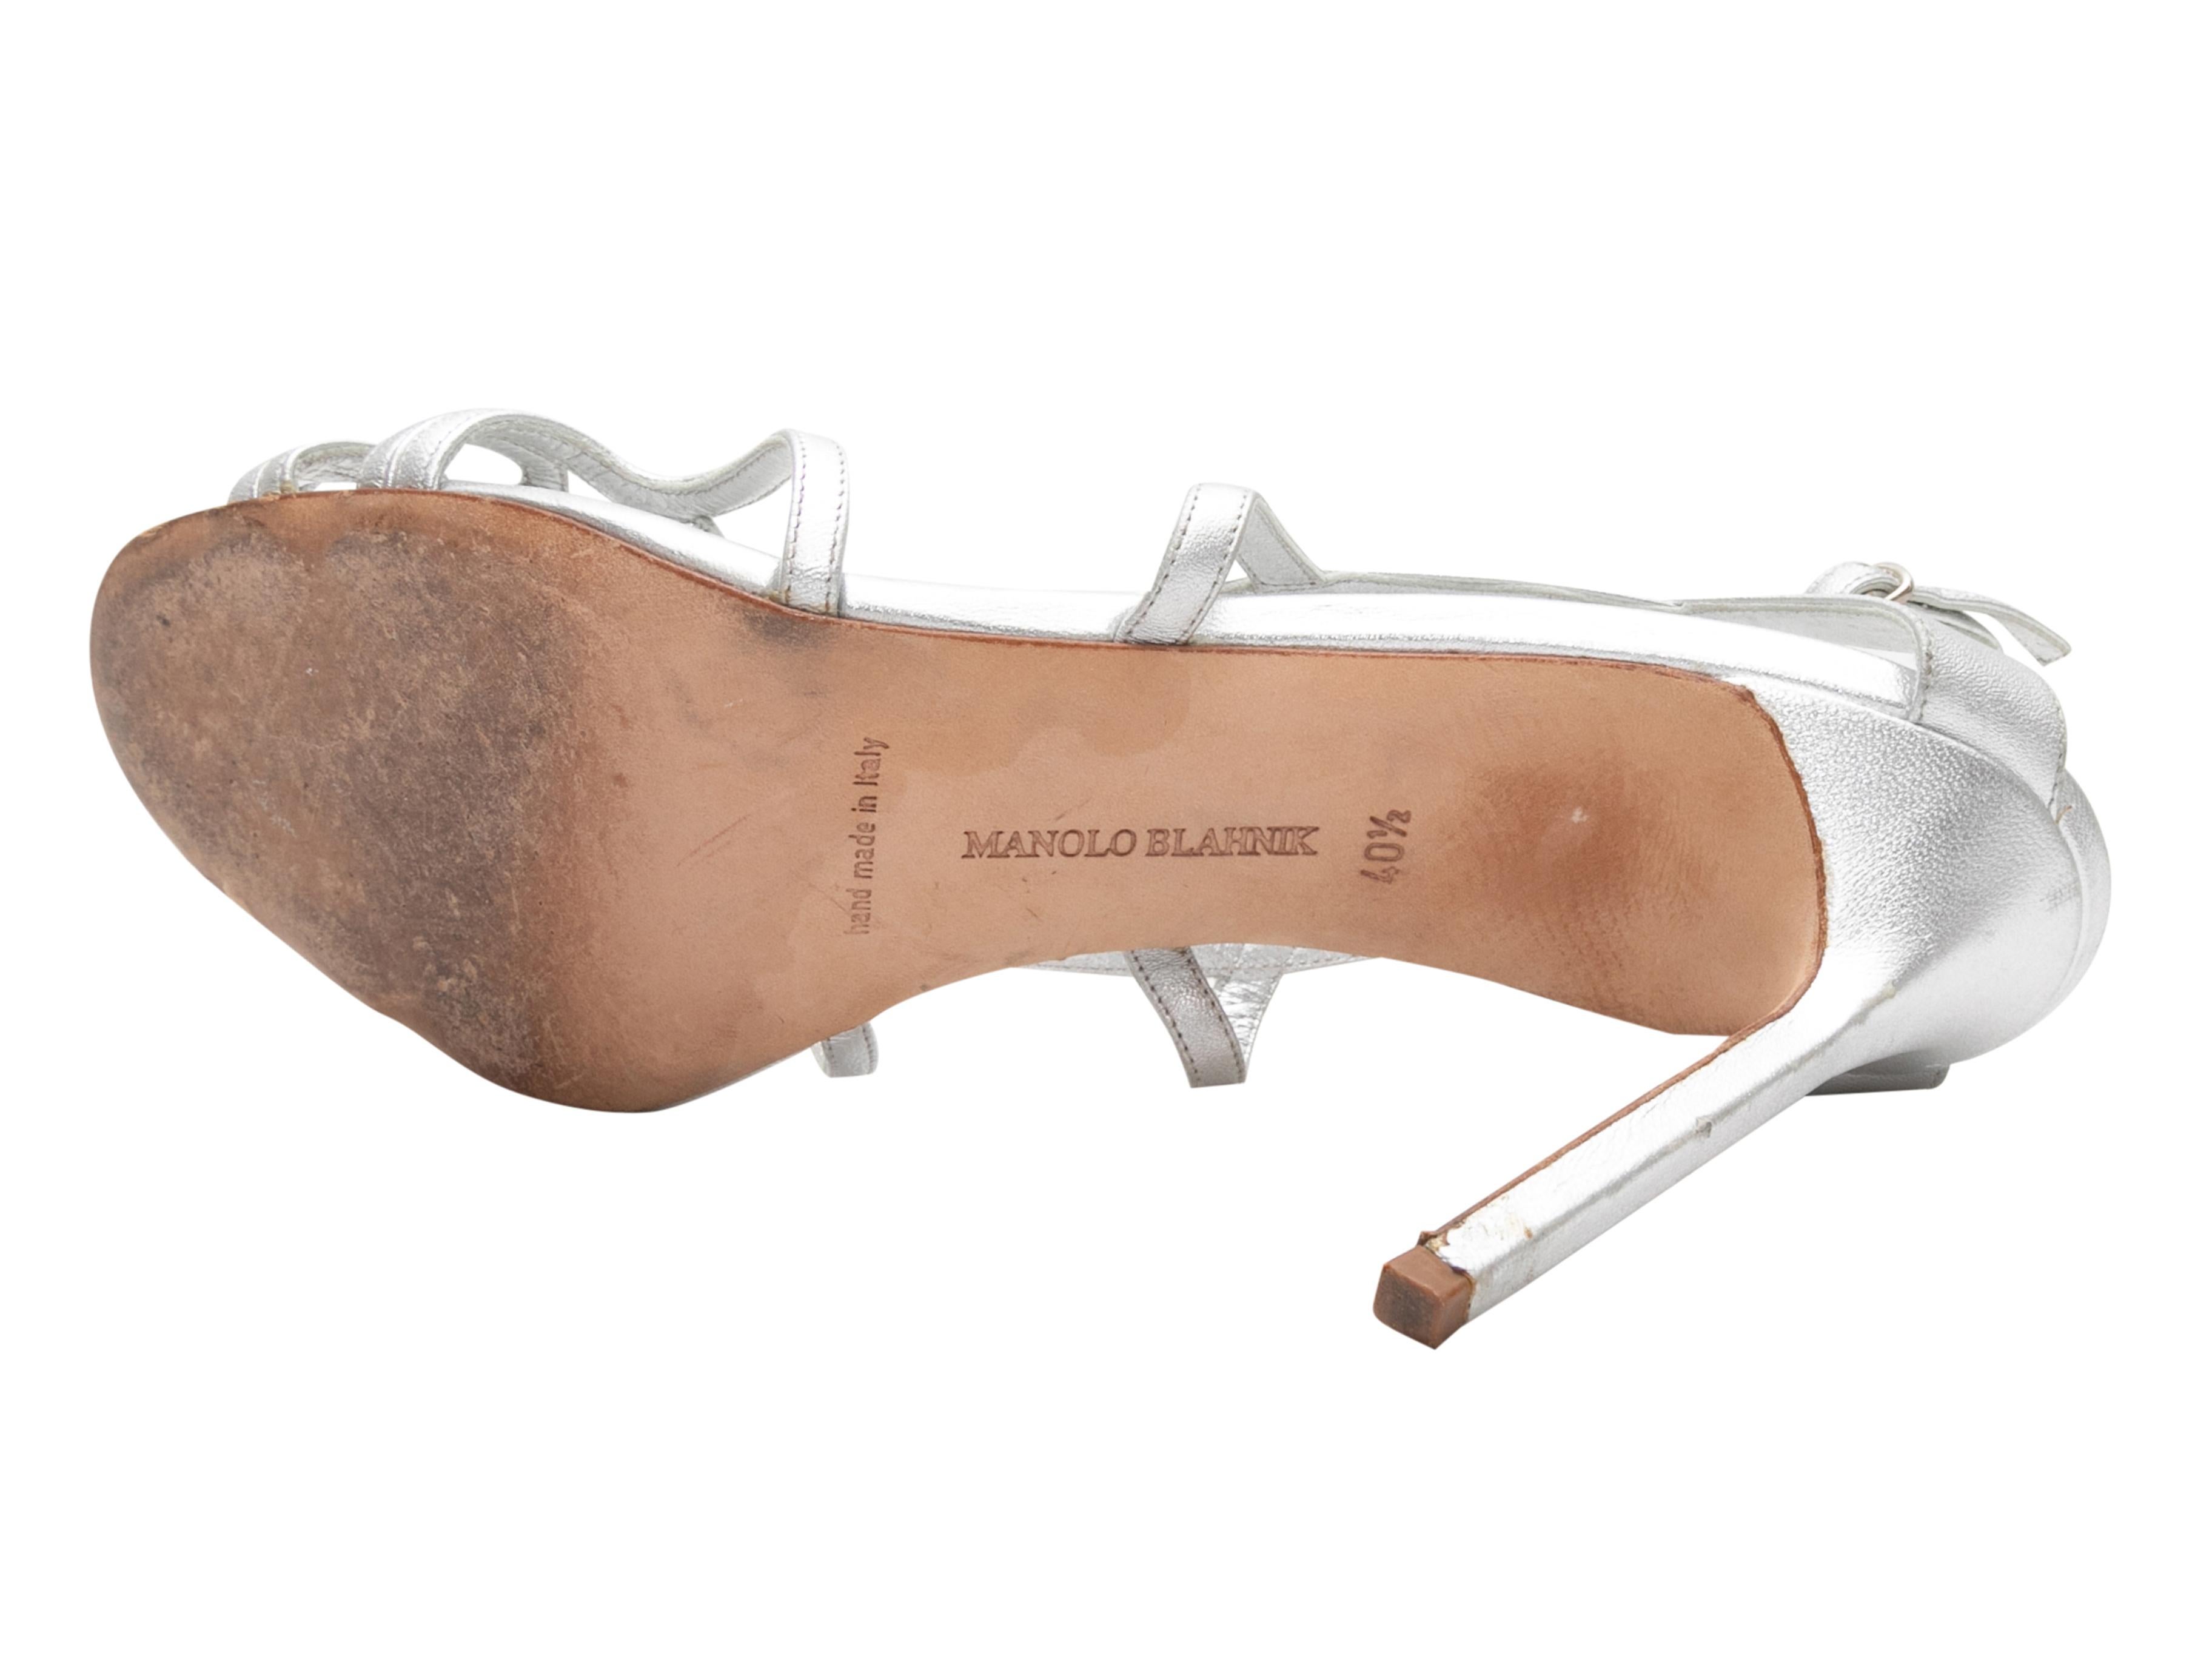 Sandales à talons en cuir métallisé argenté de Manolo Blahnik. Fermeture à boucle au niveau de la cheville. Hauteur du talon : 4.25